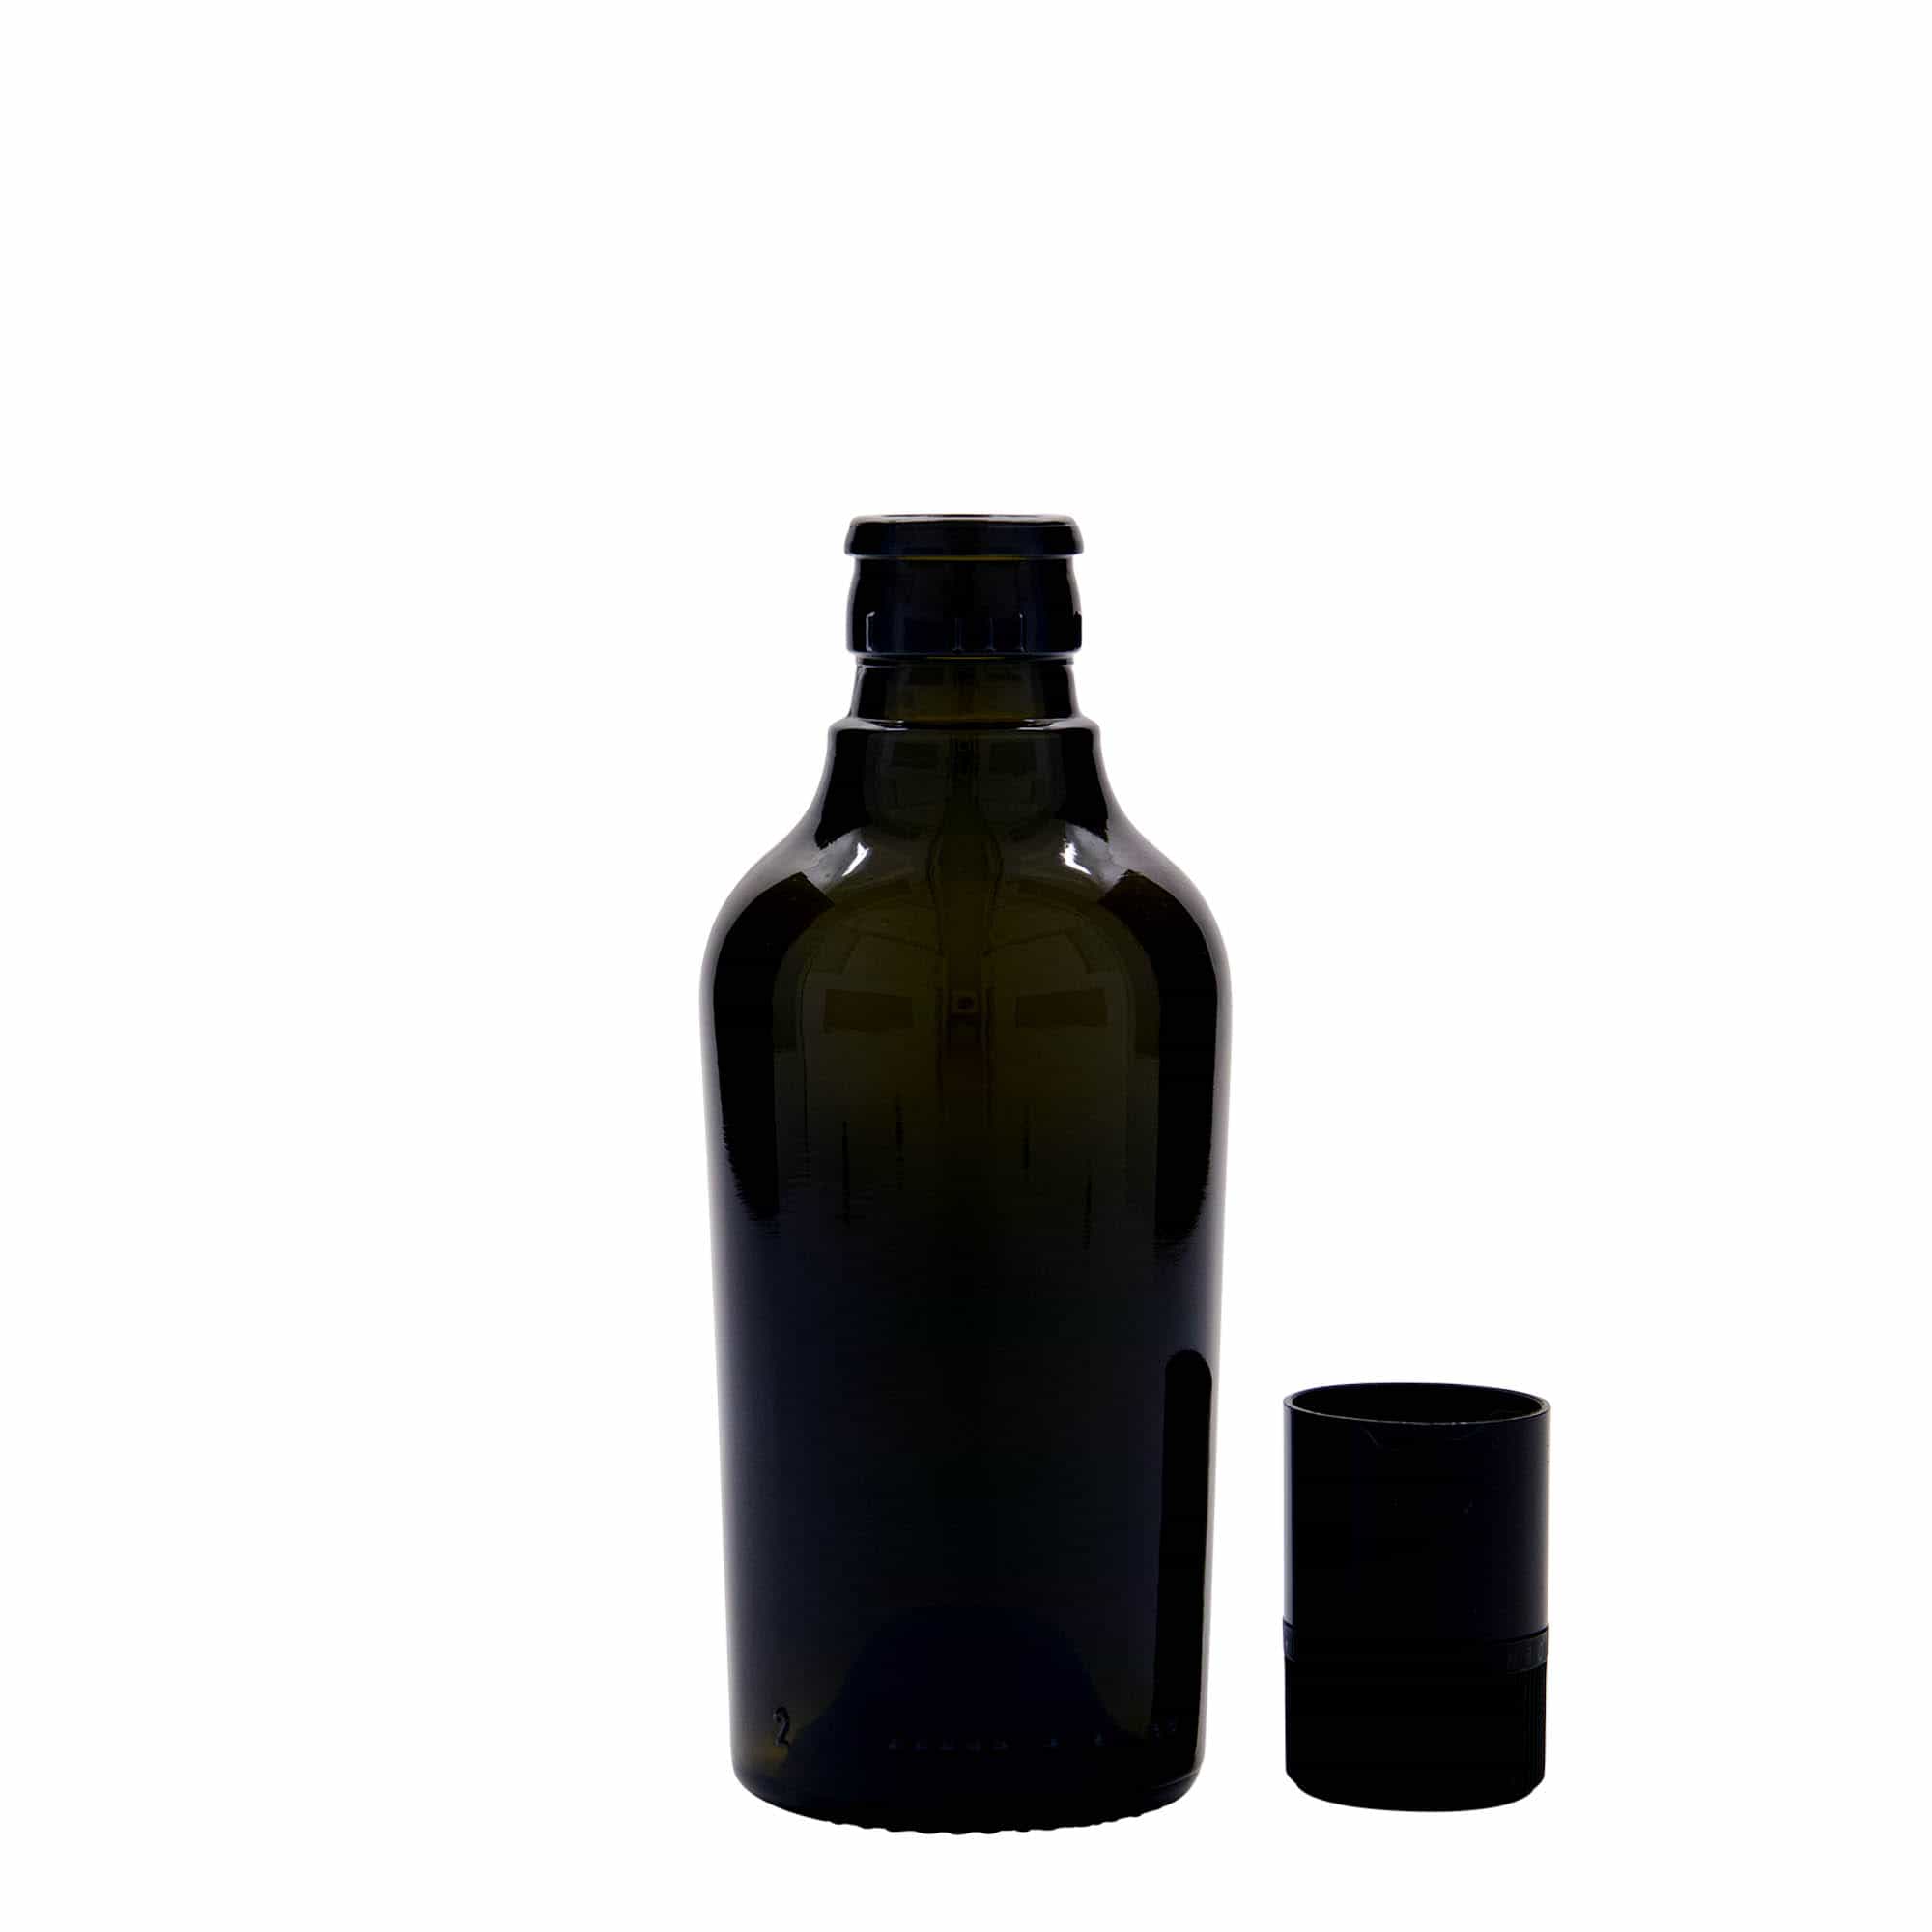 Lahev na ocet/olej 250 ml 'Oleum', sklo, starožitná zelená, ústí: DOP